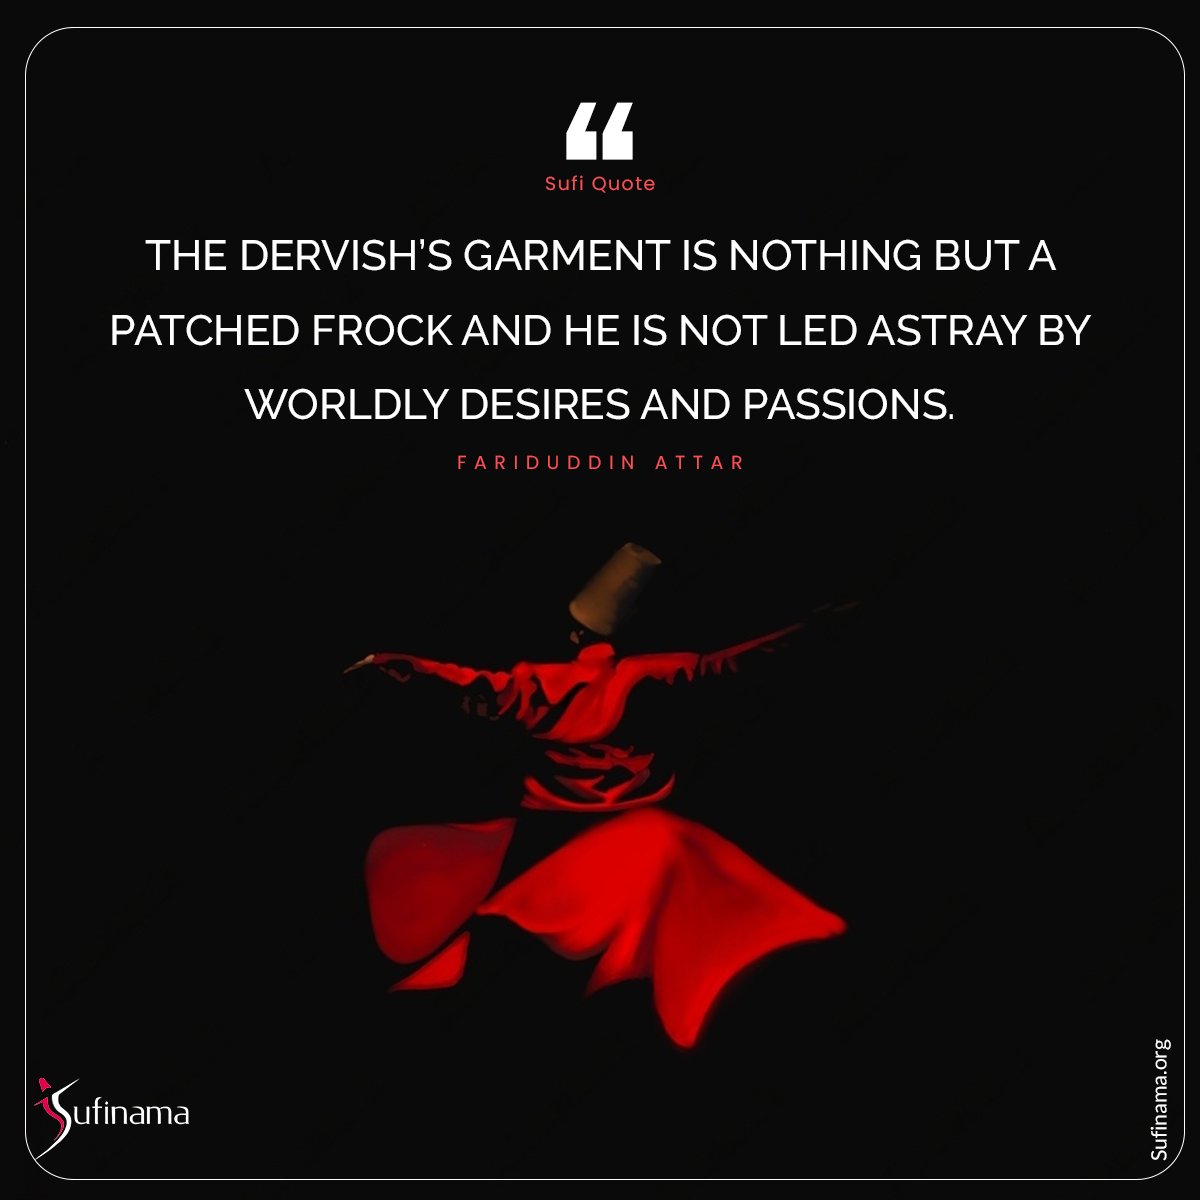 Sufi Quotes/ Fariduddin Attar

#sufinama #sufism #sufi #sufiquotes